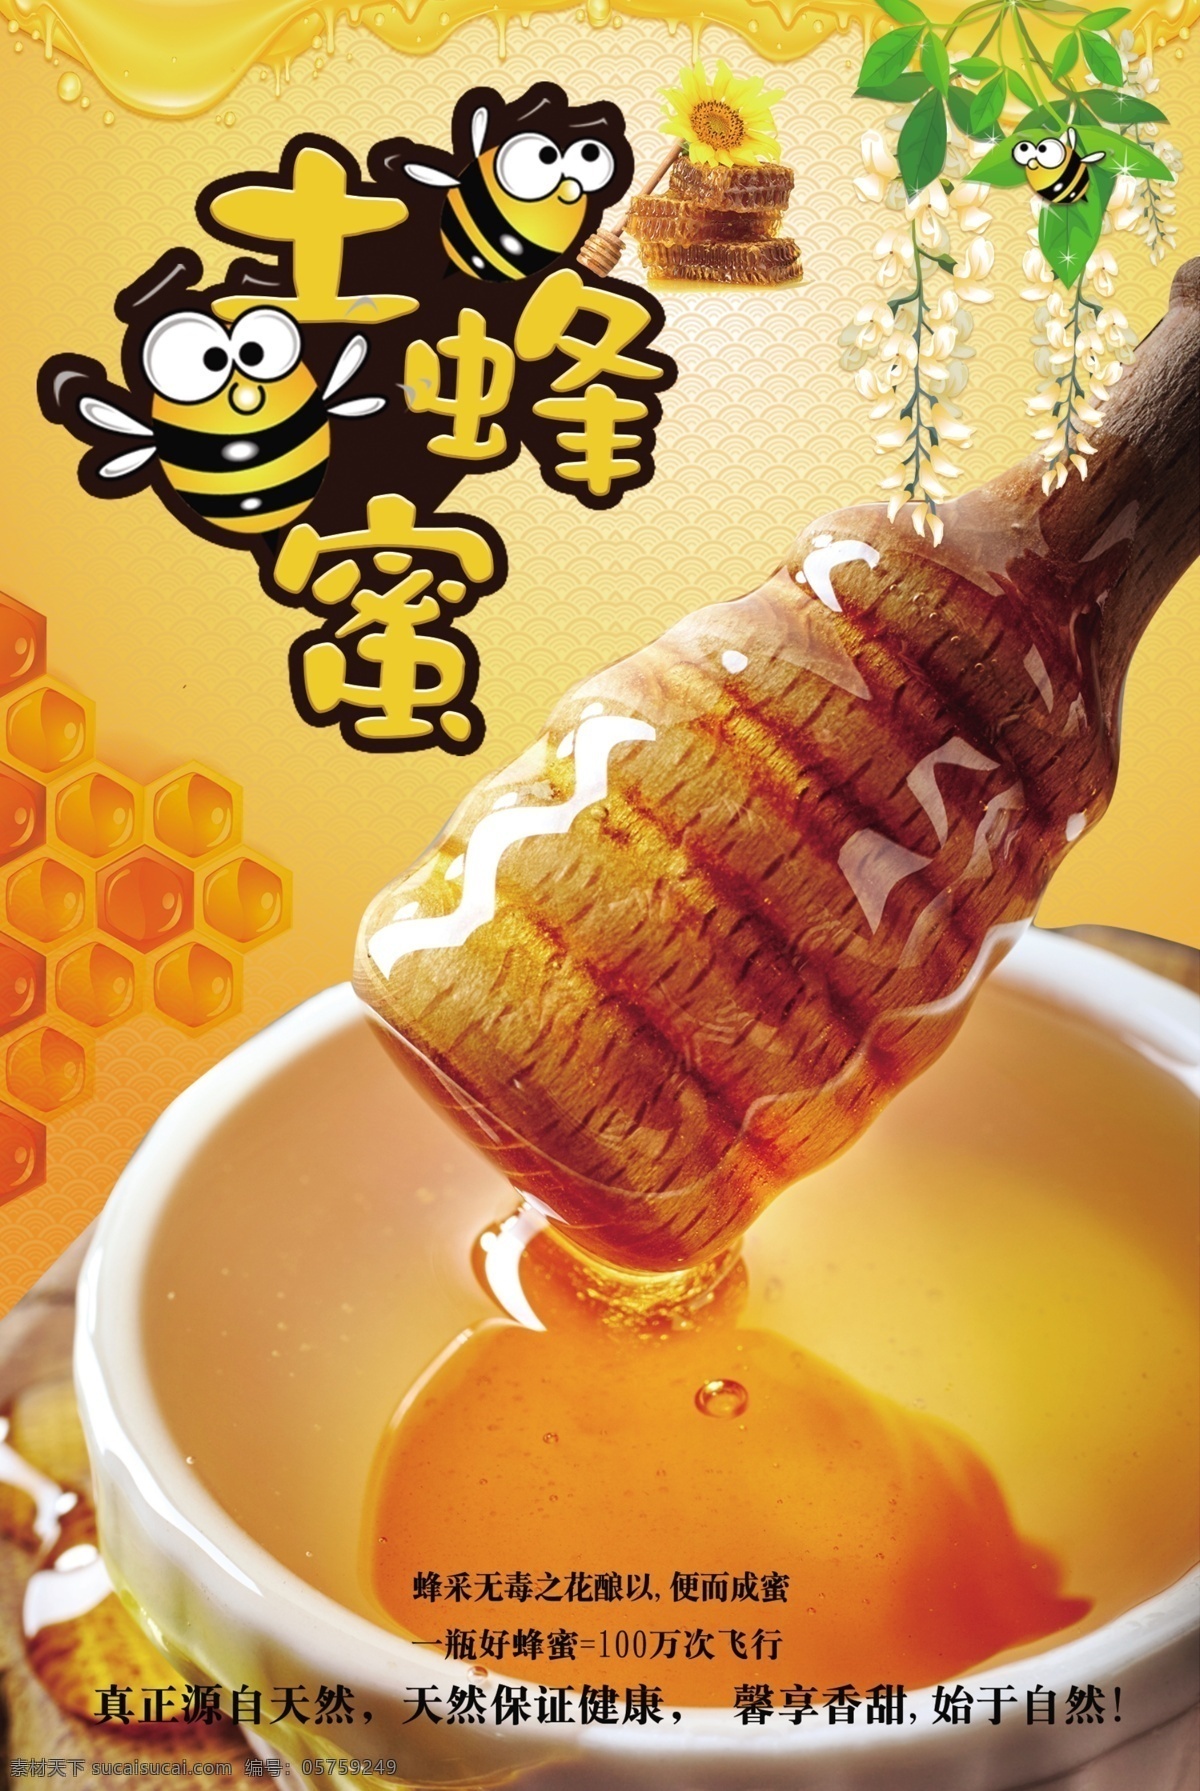 土蜂蜜 蜂蜜 蜜糖 蜜蜂 蔗糖 麦芽糖 槐花蜜 天然蜂蜜 蜂蜜海报 蜜蜂海报 蜂王浆 蜂王